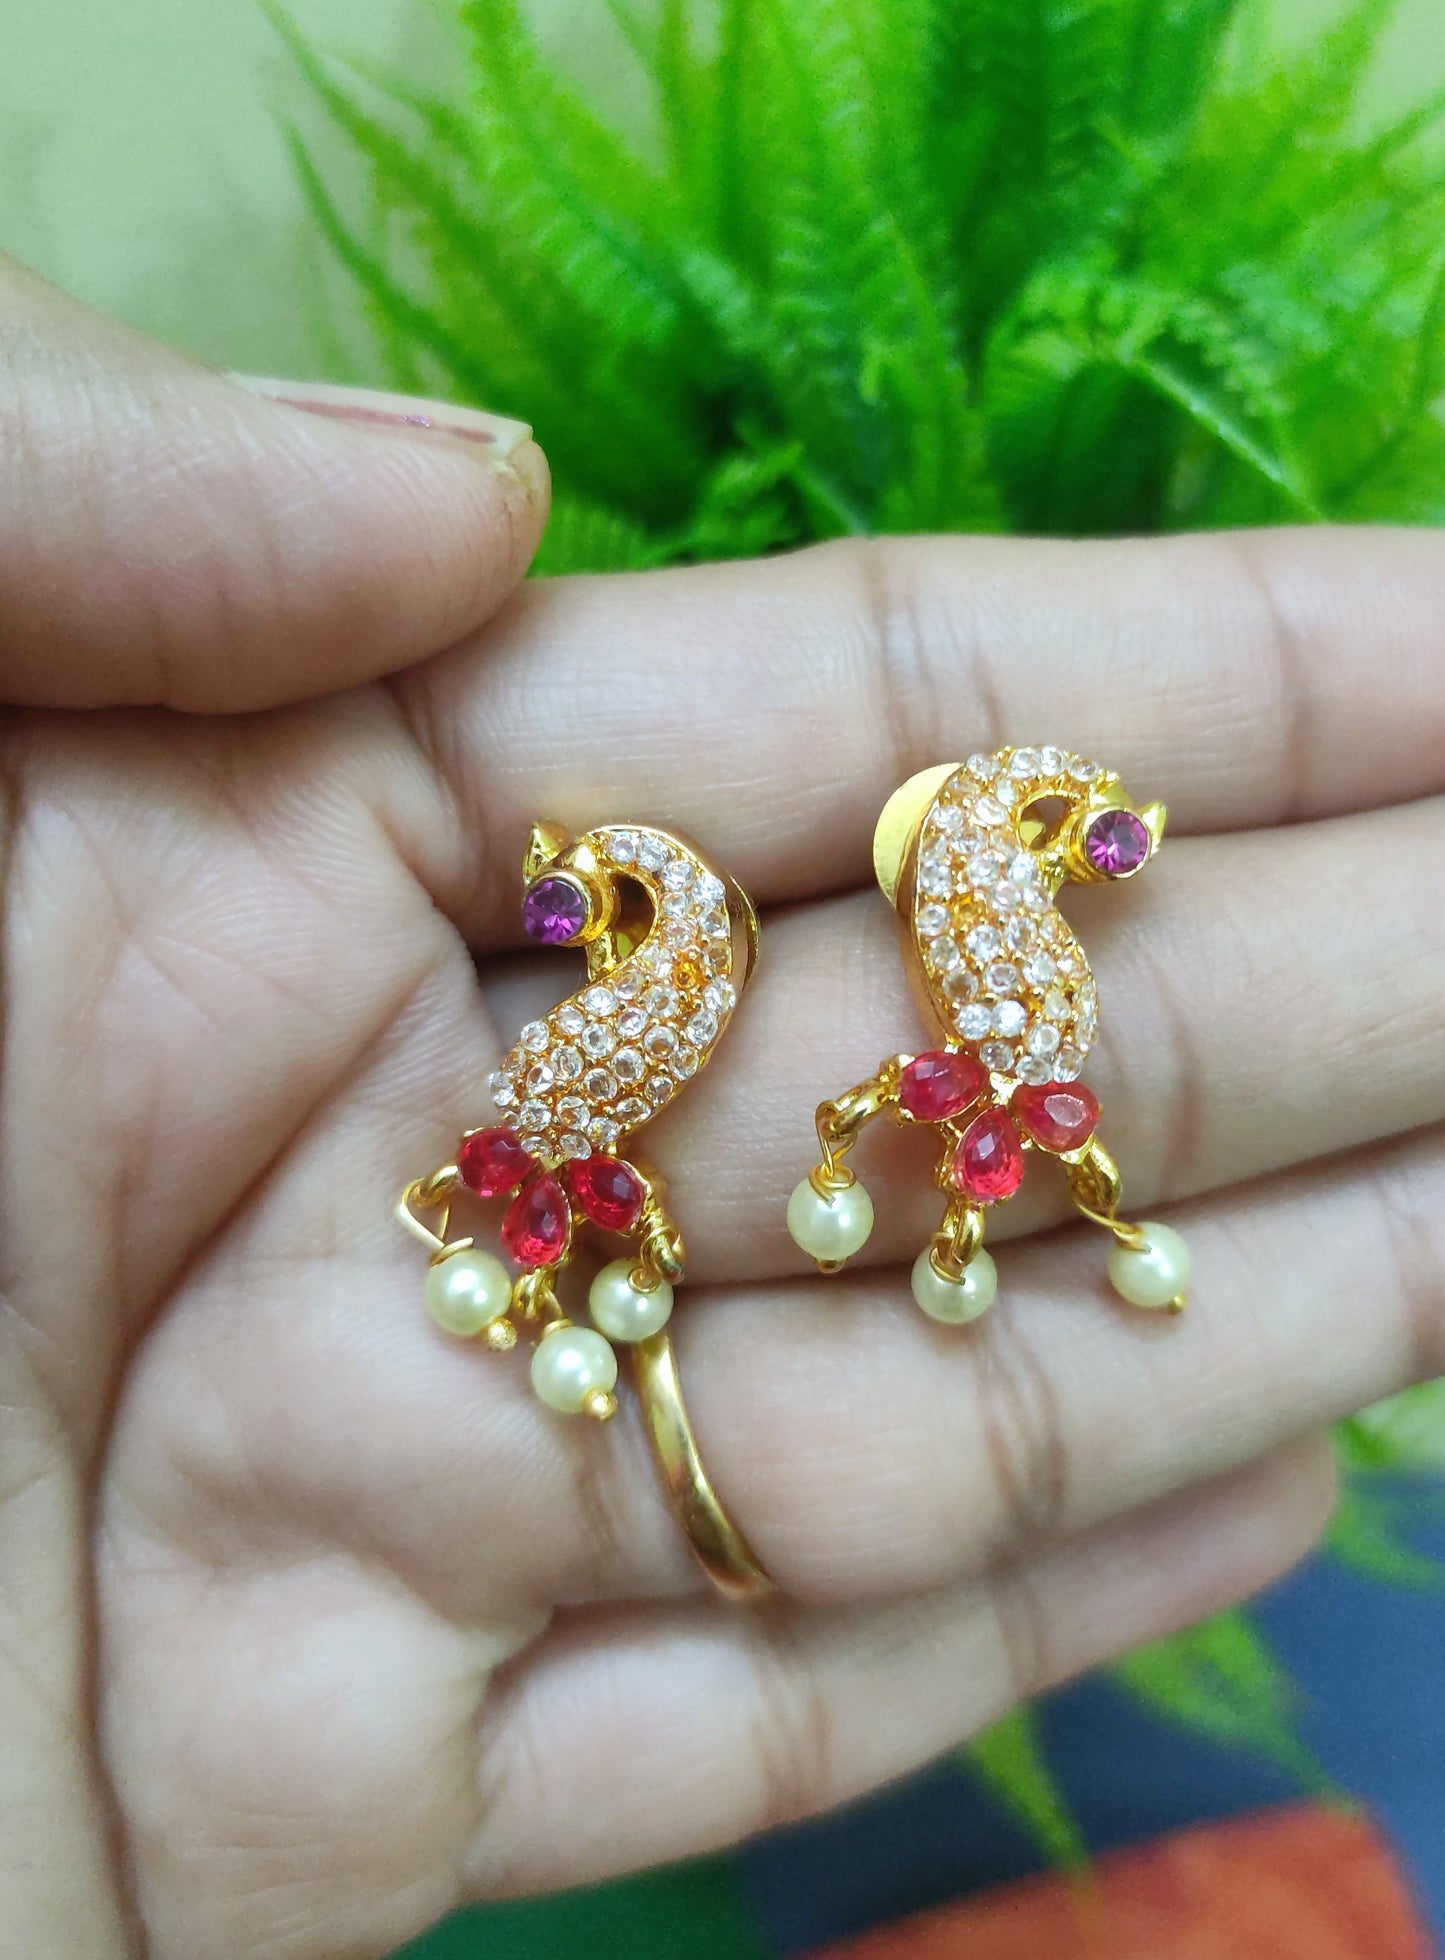 Saachi pink  tanmani necklace set